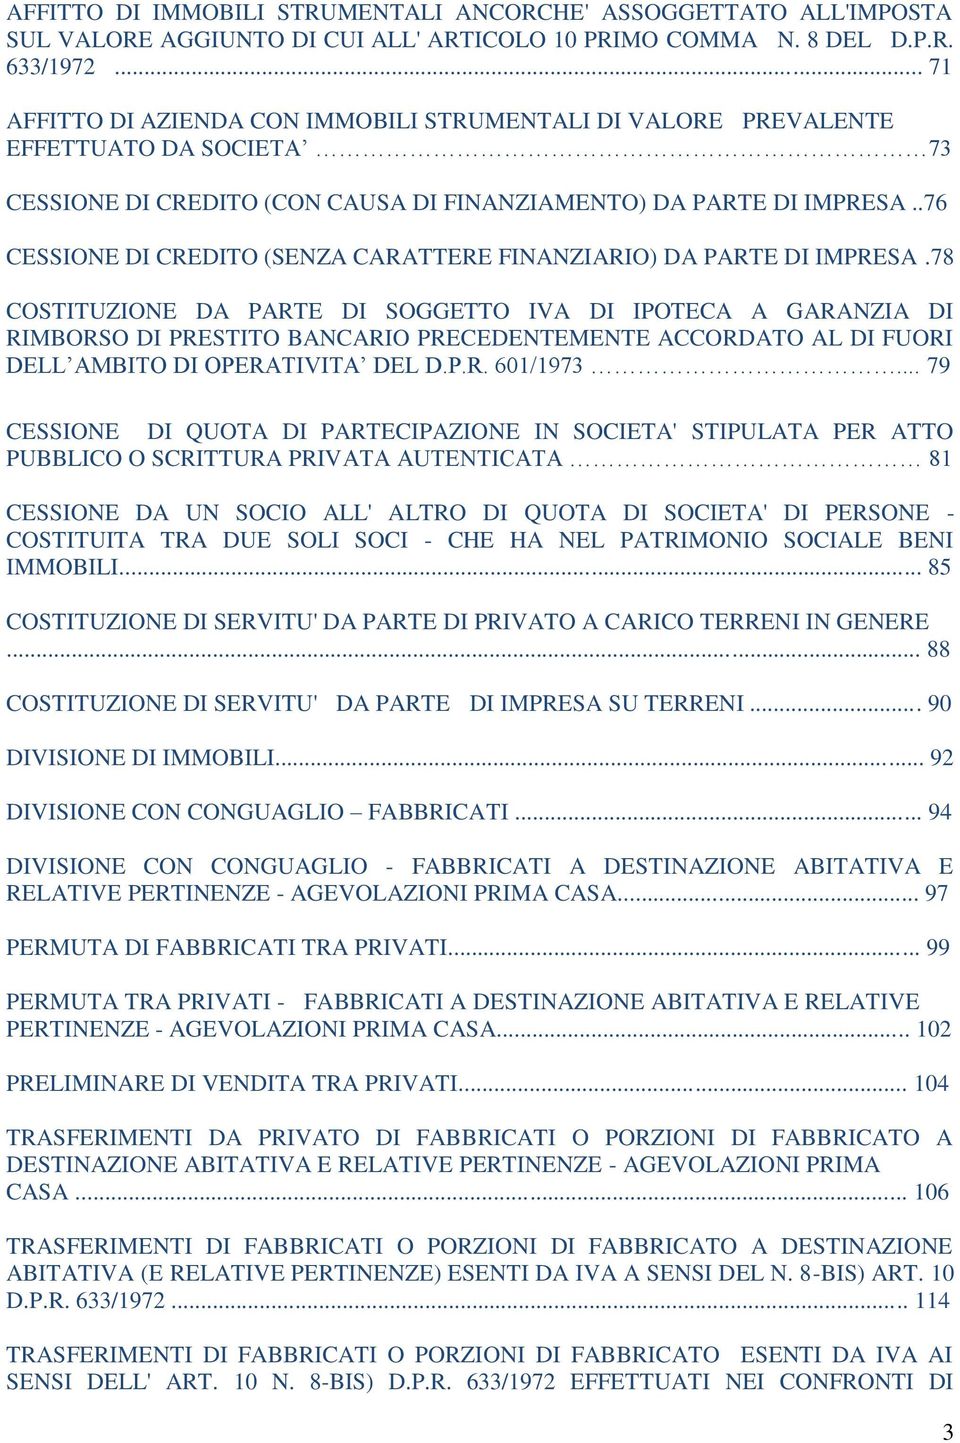 .76 CESSIONE DI CREDITO (SENZA CARATTERE FINANZIARIO) DA PARTE DI IMPRESA.